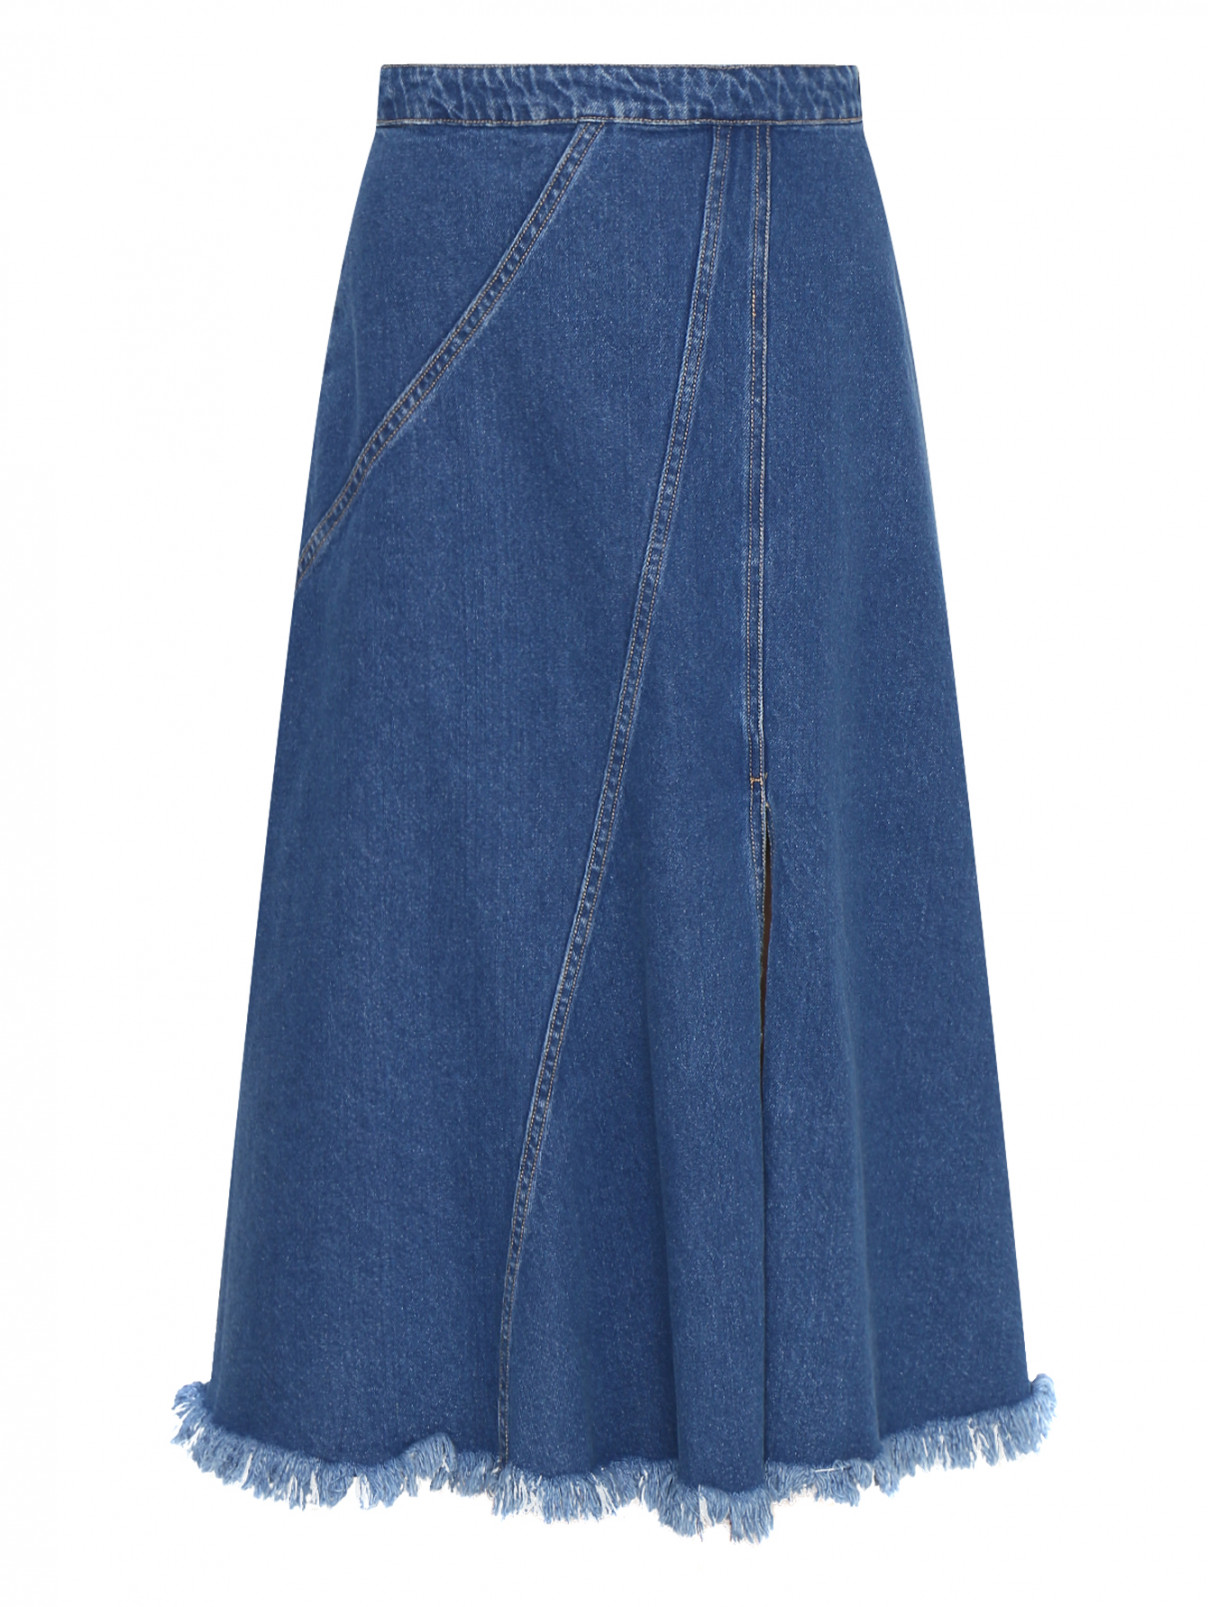 Джинсовая юбка из хлопка на молнии BOSCO  –  Общий вид  – Цвет:  Синий